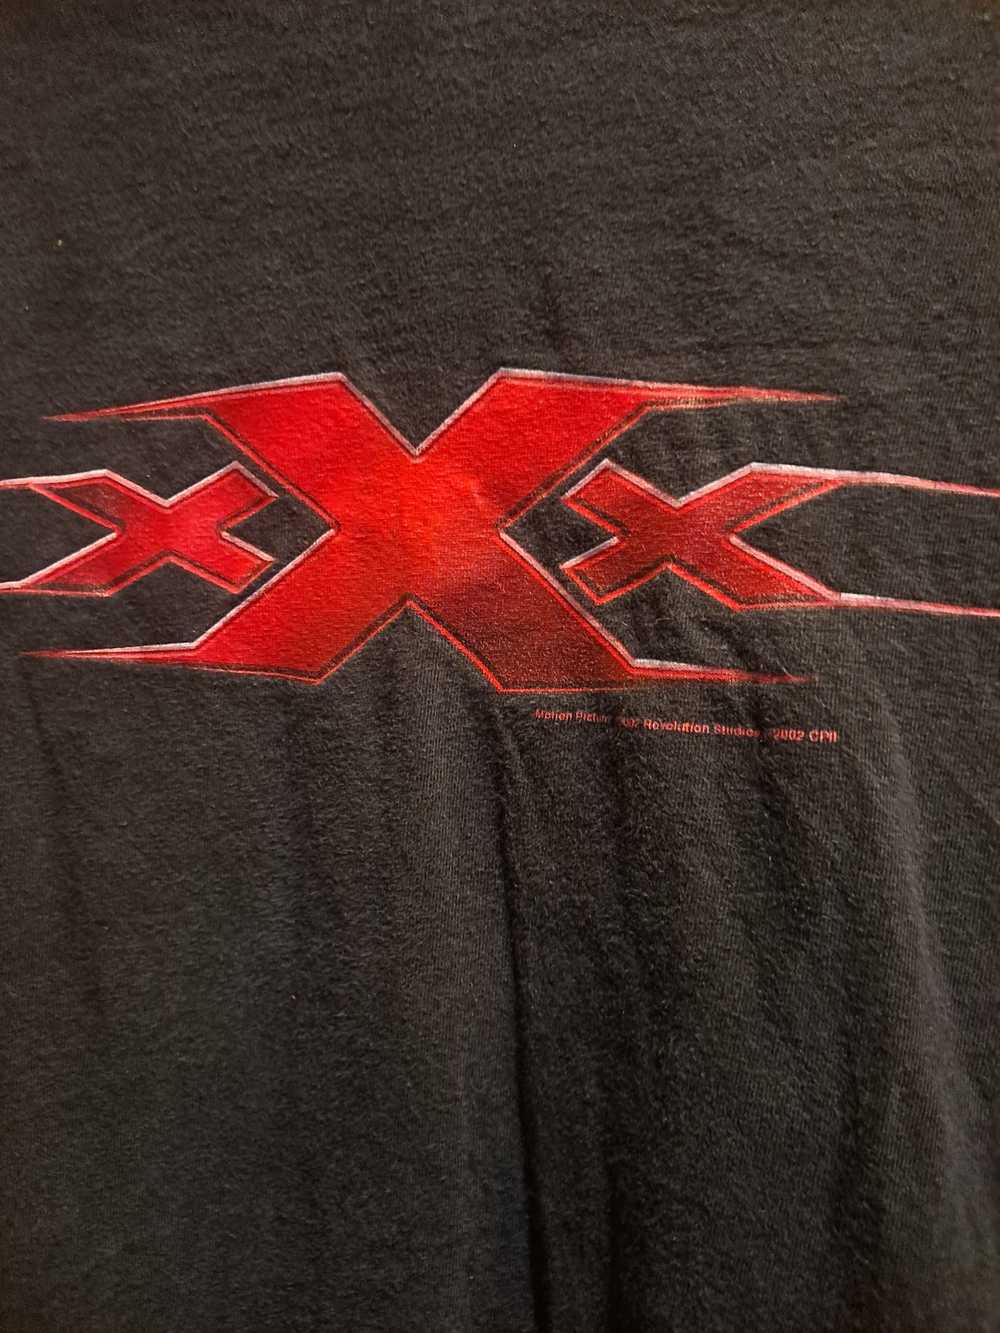 Vintage 2002 XXX Vin Diesel Movie Promo T shirt - image 3